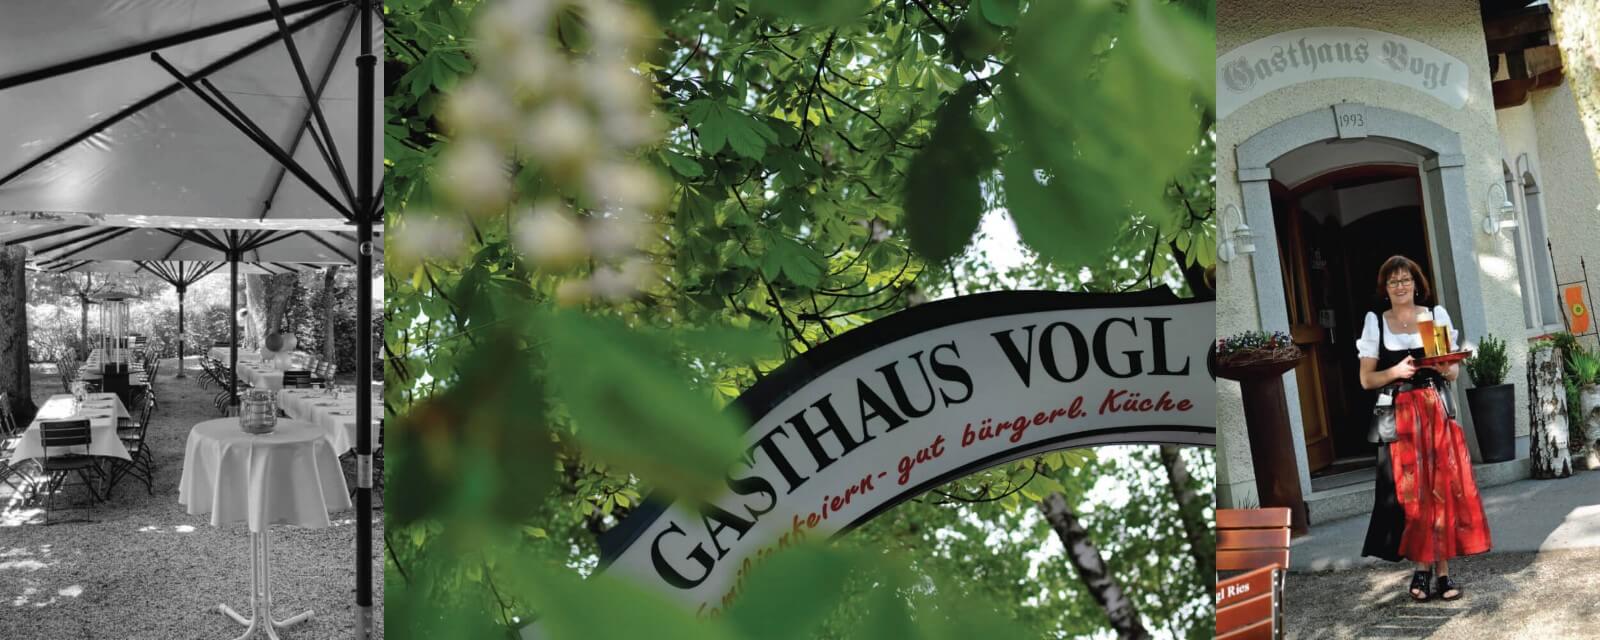  Gasthaus Vogl an der Ries in Passau